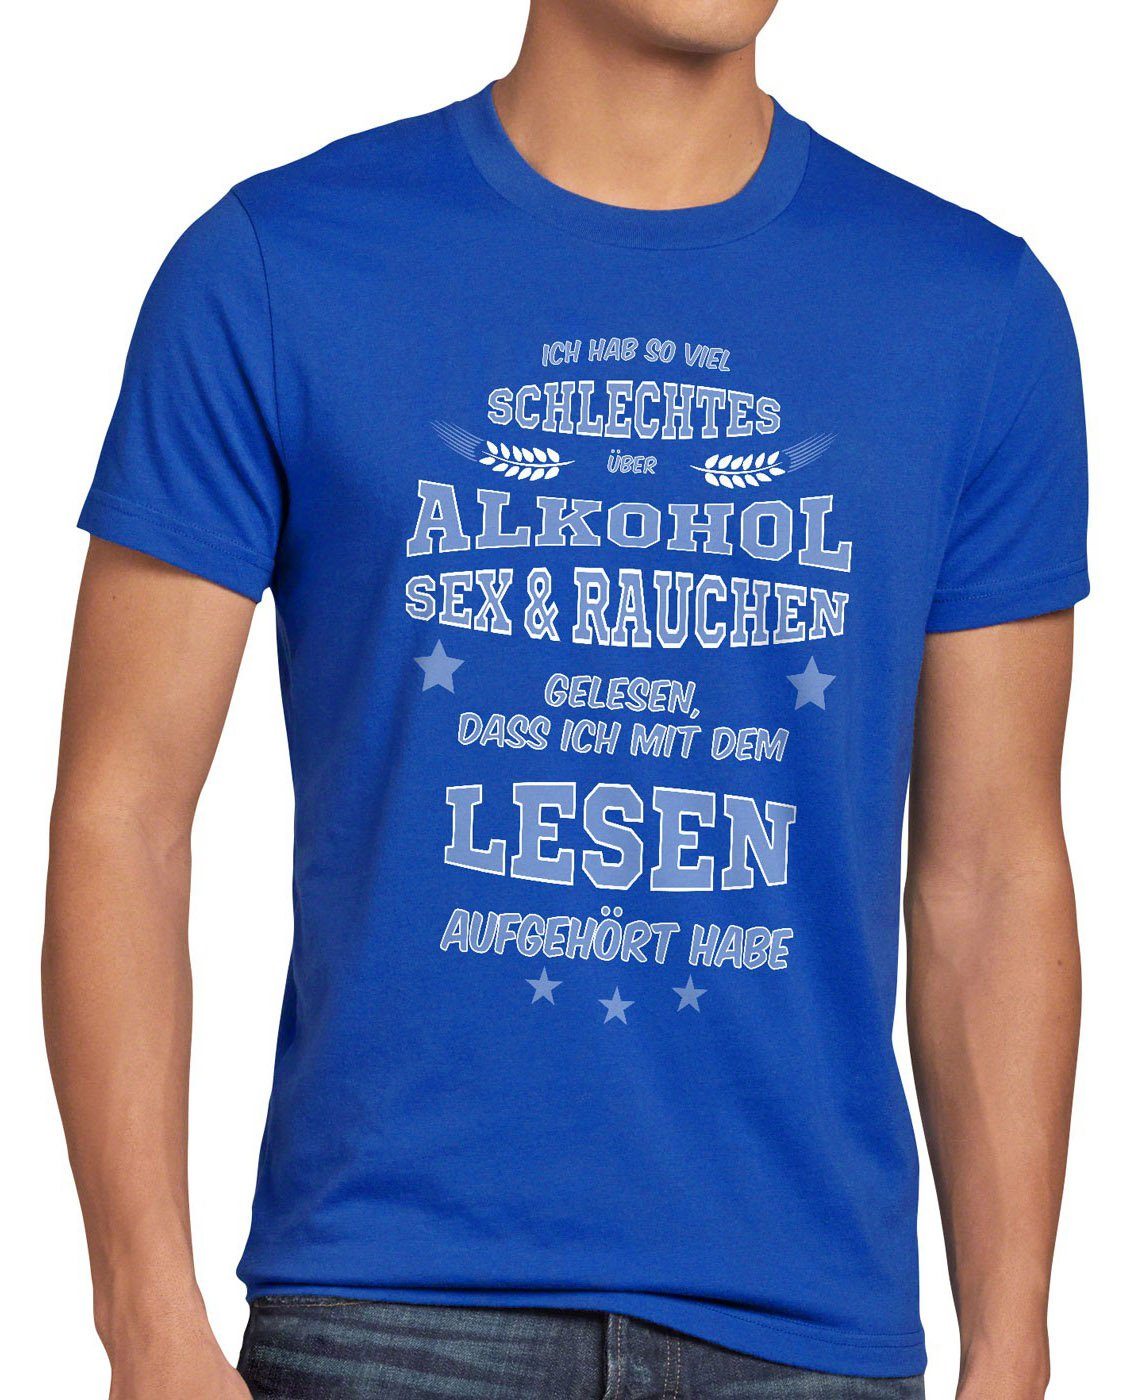 Print-Shirt blau Herren Funshirt gelesen Alkohol Rauchen Fun Viel Sex style3 Spruch T-Shirt schlechtes